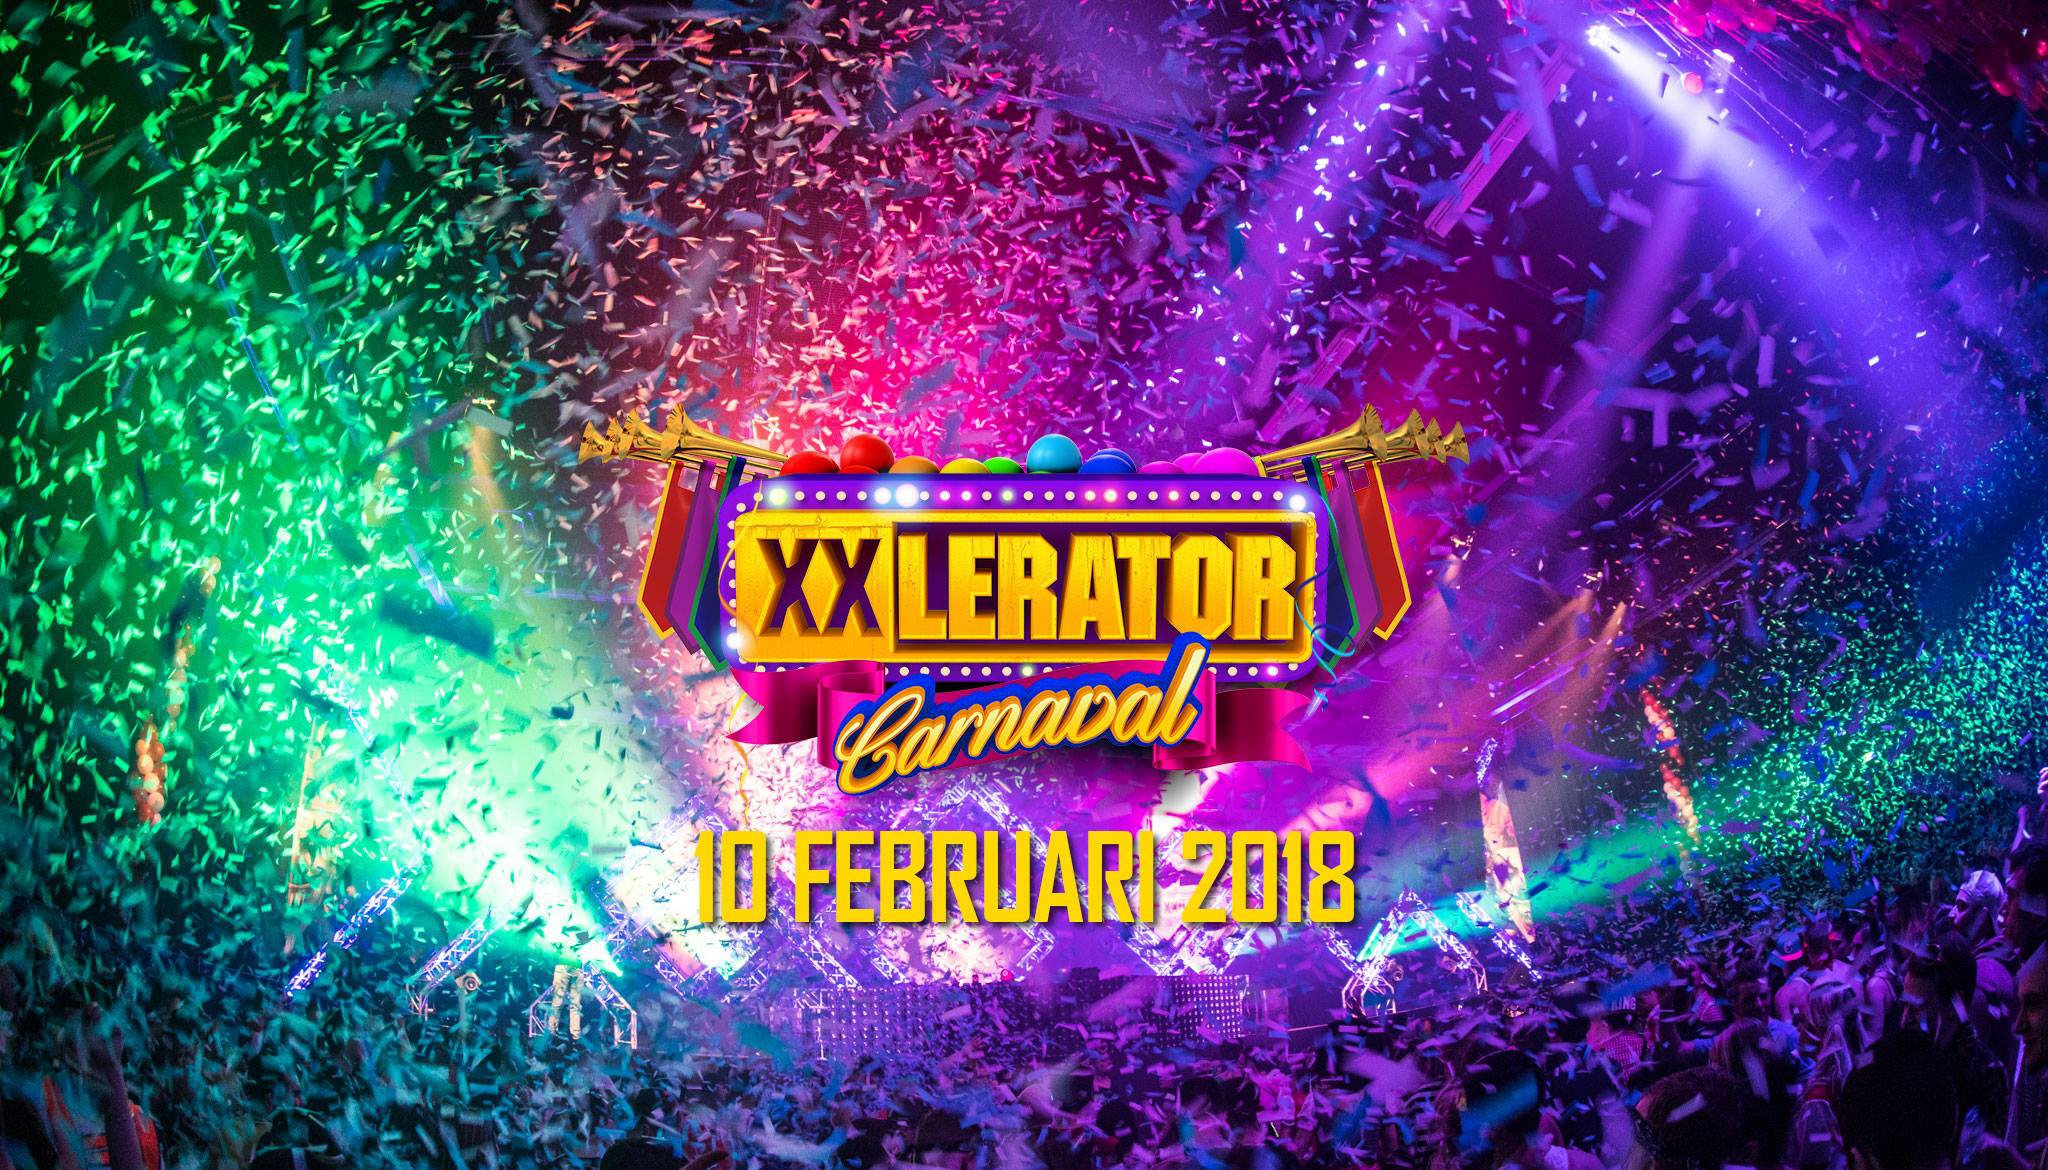 Xxlerator Carnaval 2018